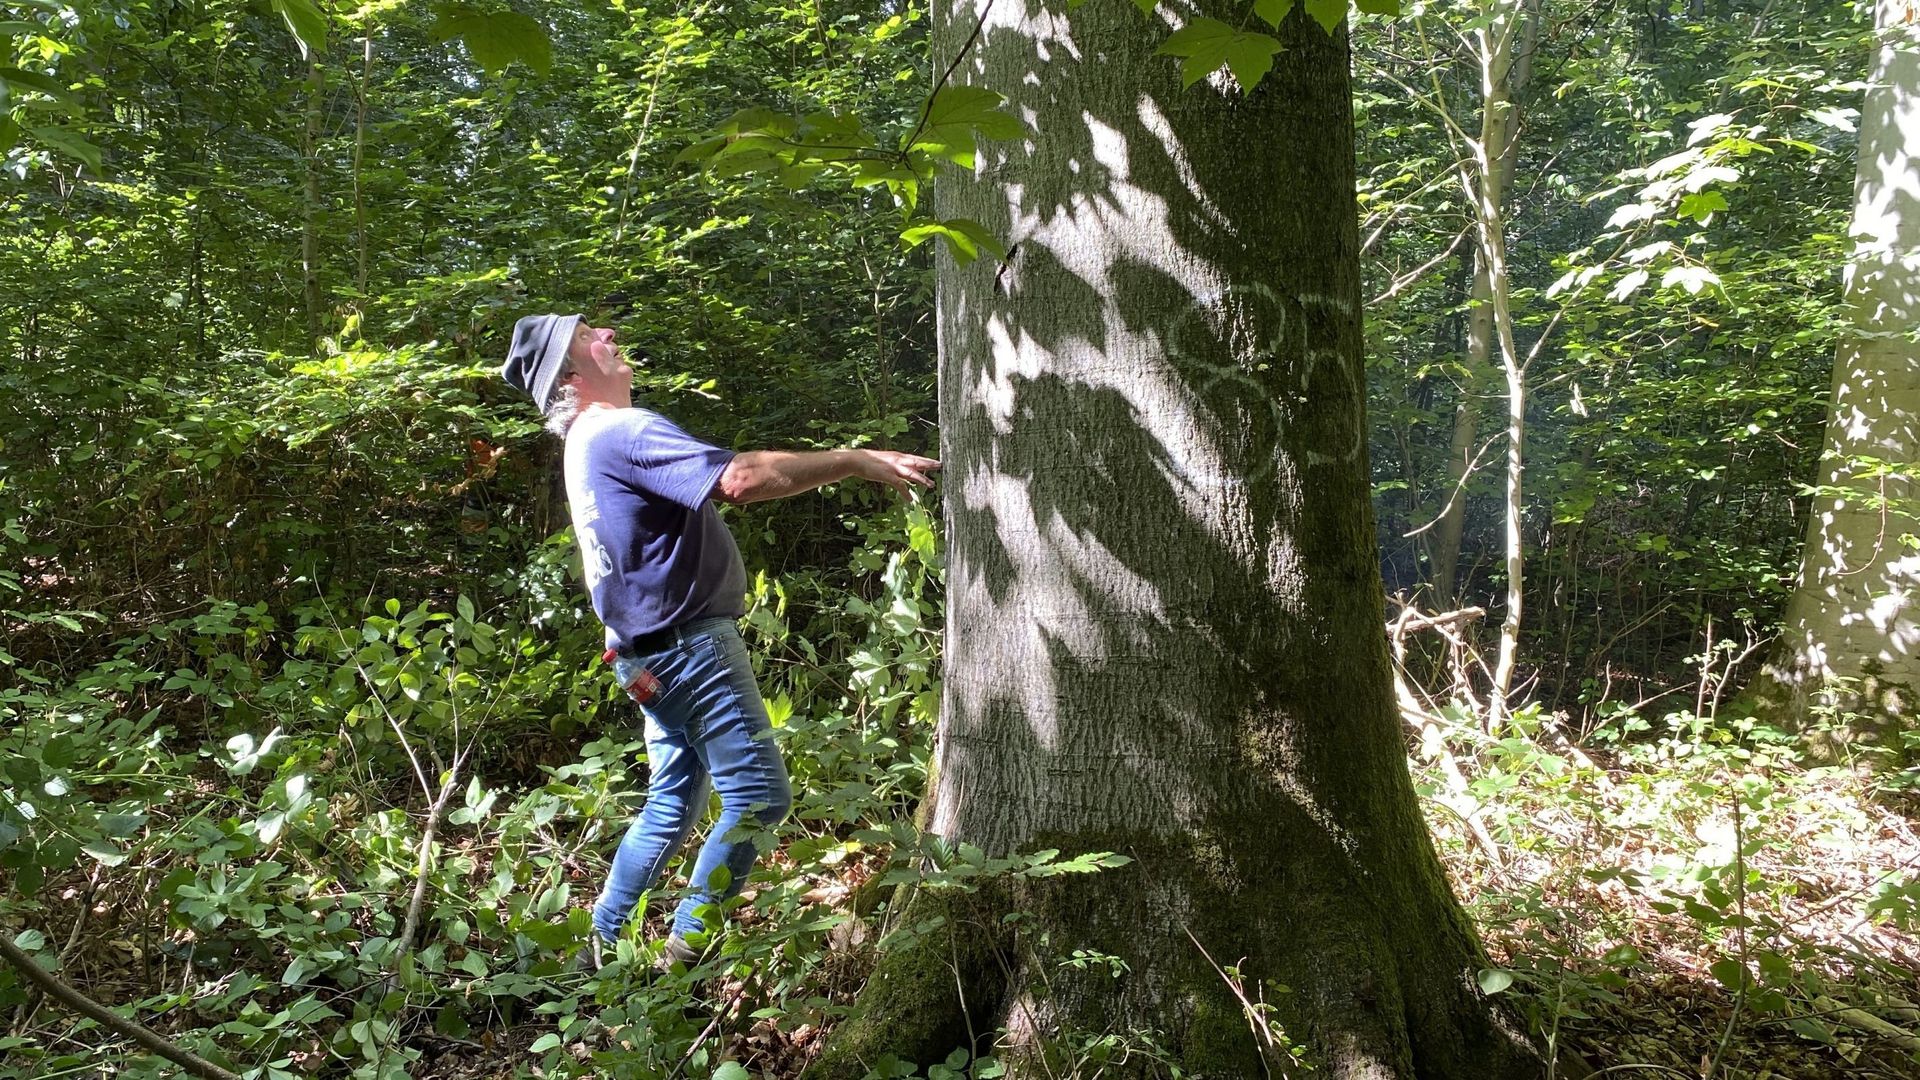 Pour couper court aux critiques éventuelles, l’UCLouvain précise que les revenus perçus de la vente des arbres abattus servent à financer la gestion du bois de Lauzelle et les replantations.